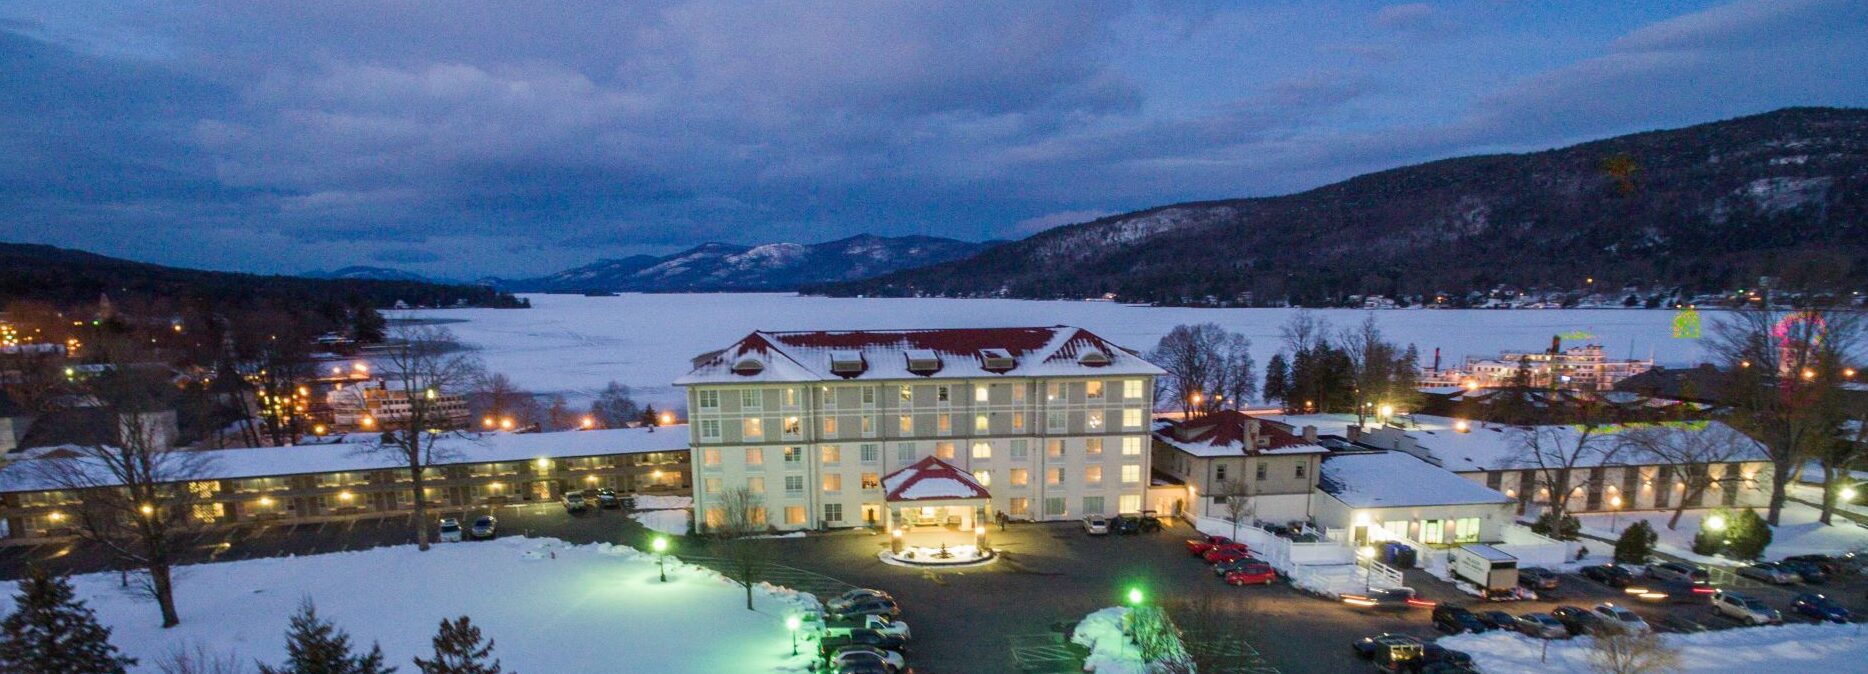 Dusk Photo of the Hotel towards Lake George